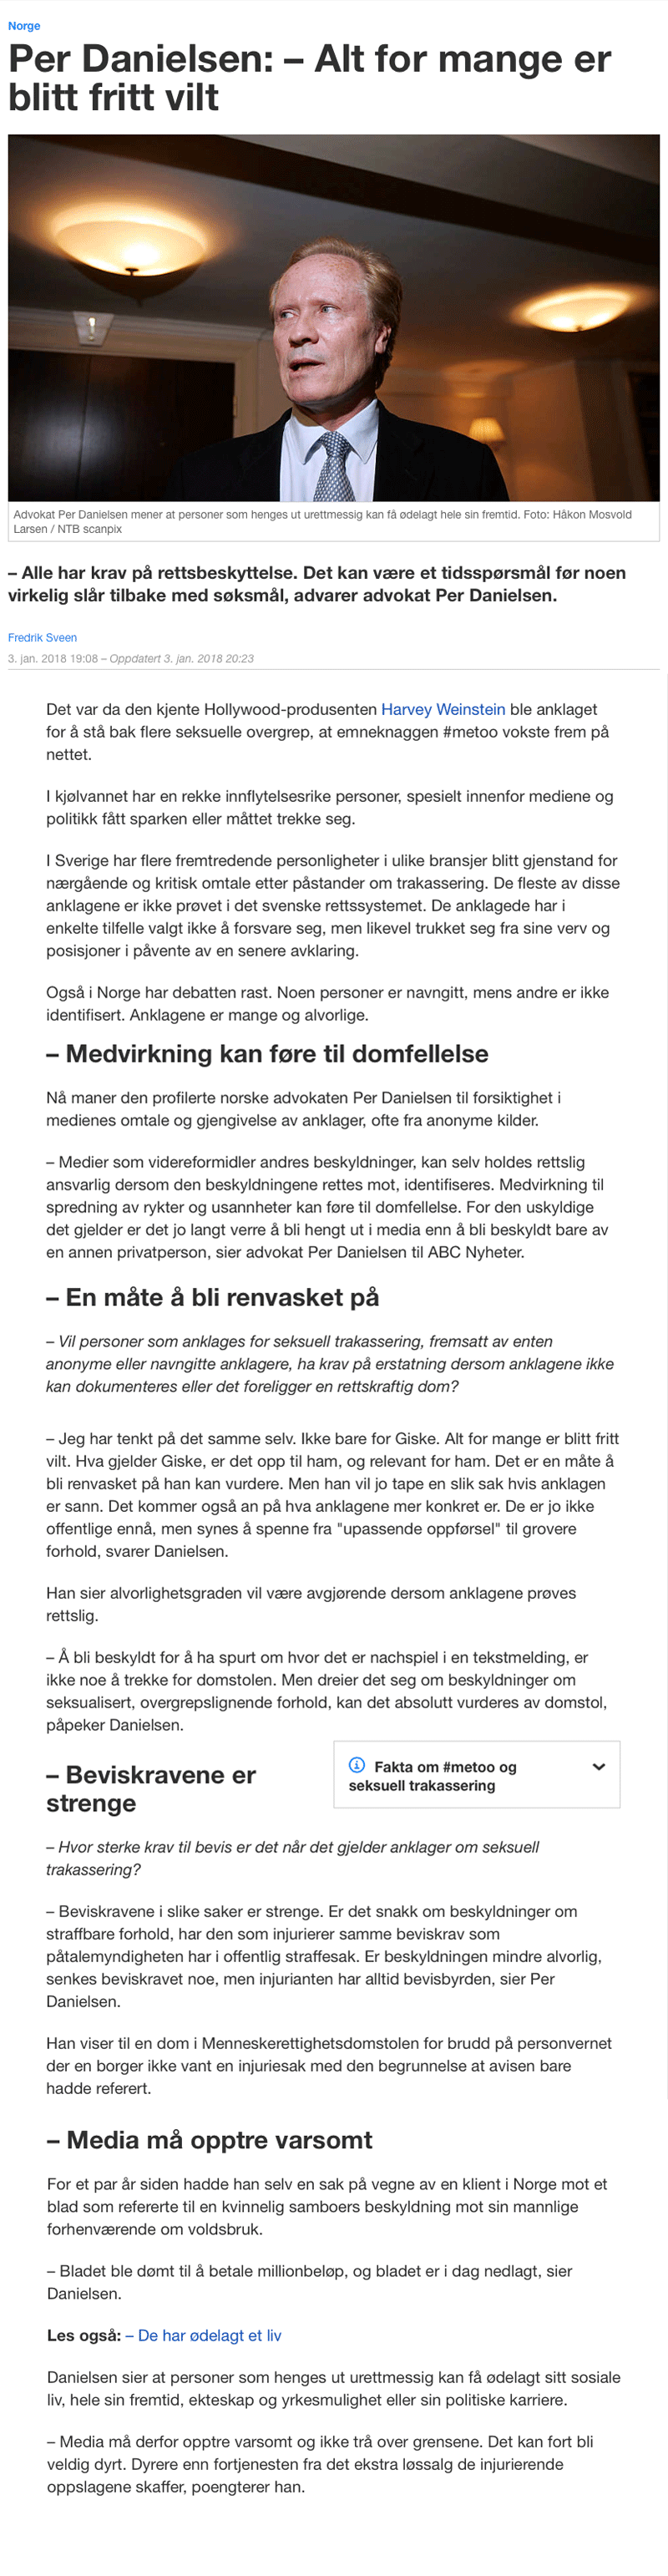 Rettsutvikling. Danielsen maner om forsiktighet i #metoo dekningen. Advokat Danielsen & Co. Per Danielsen. Advokat i Oslo.